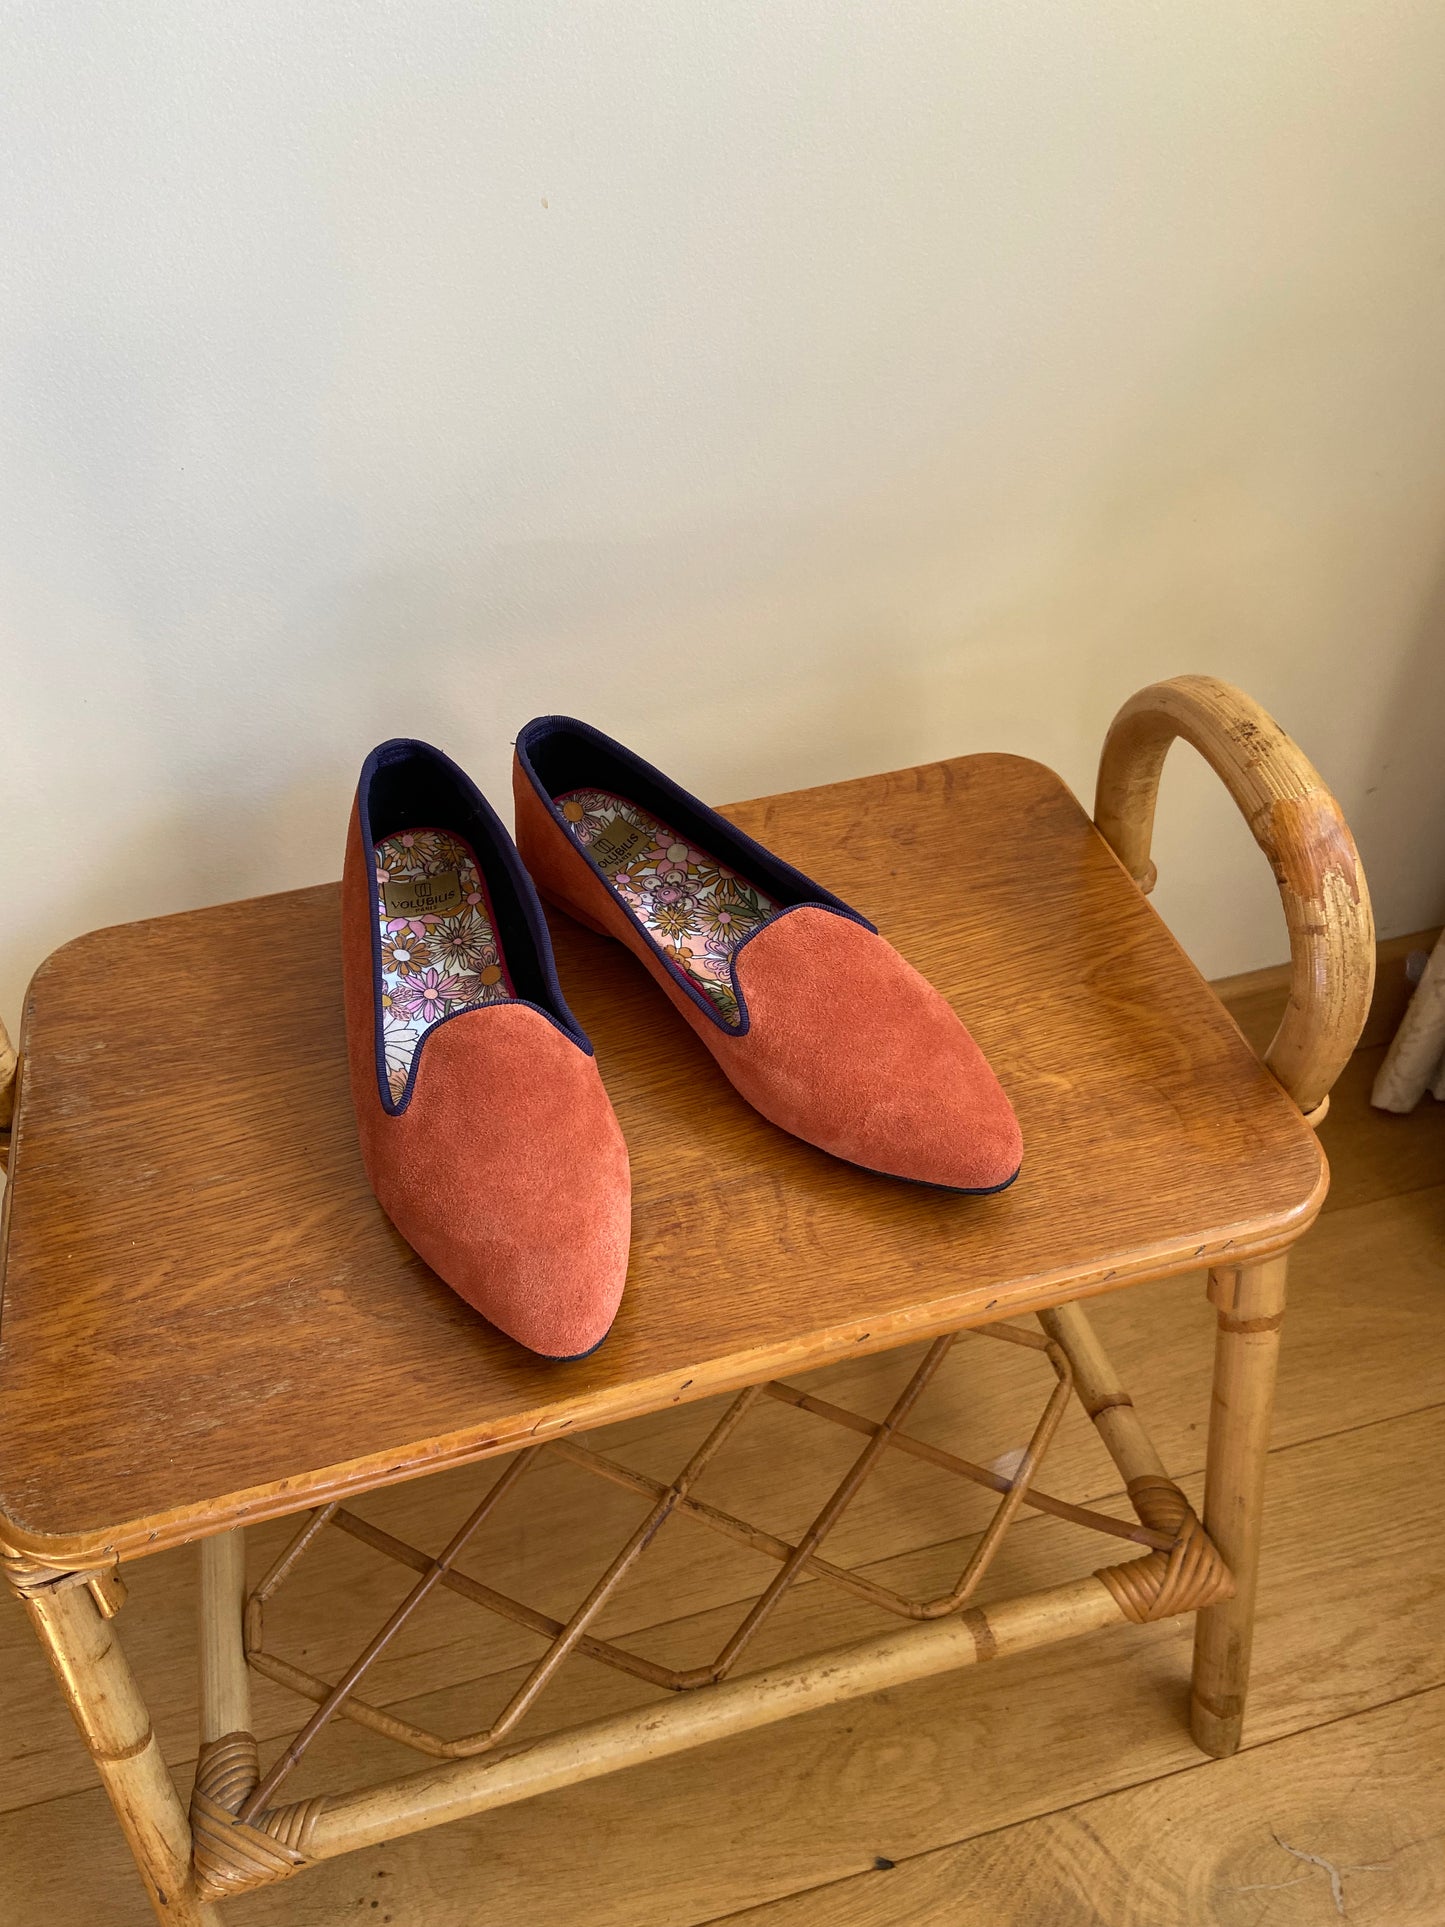 Slippers VOLUBILIS PARIS en cuir de couleur fauve et fabriqués en France, pour allier confort et élégance à la maison.